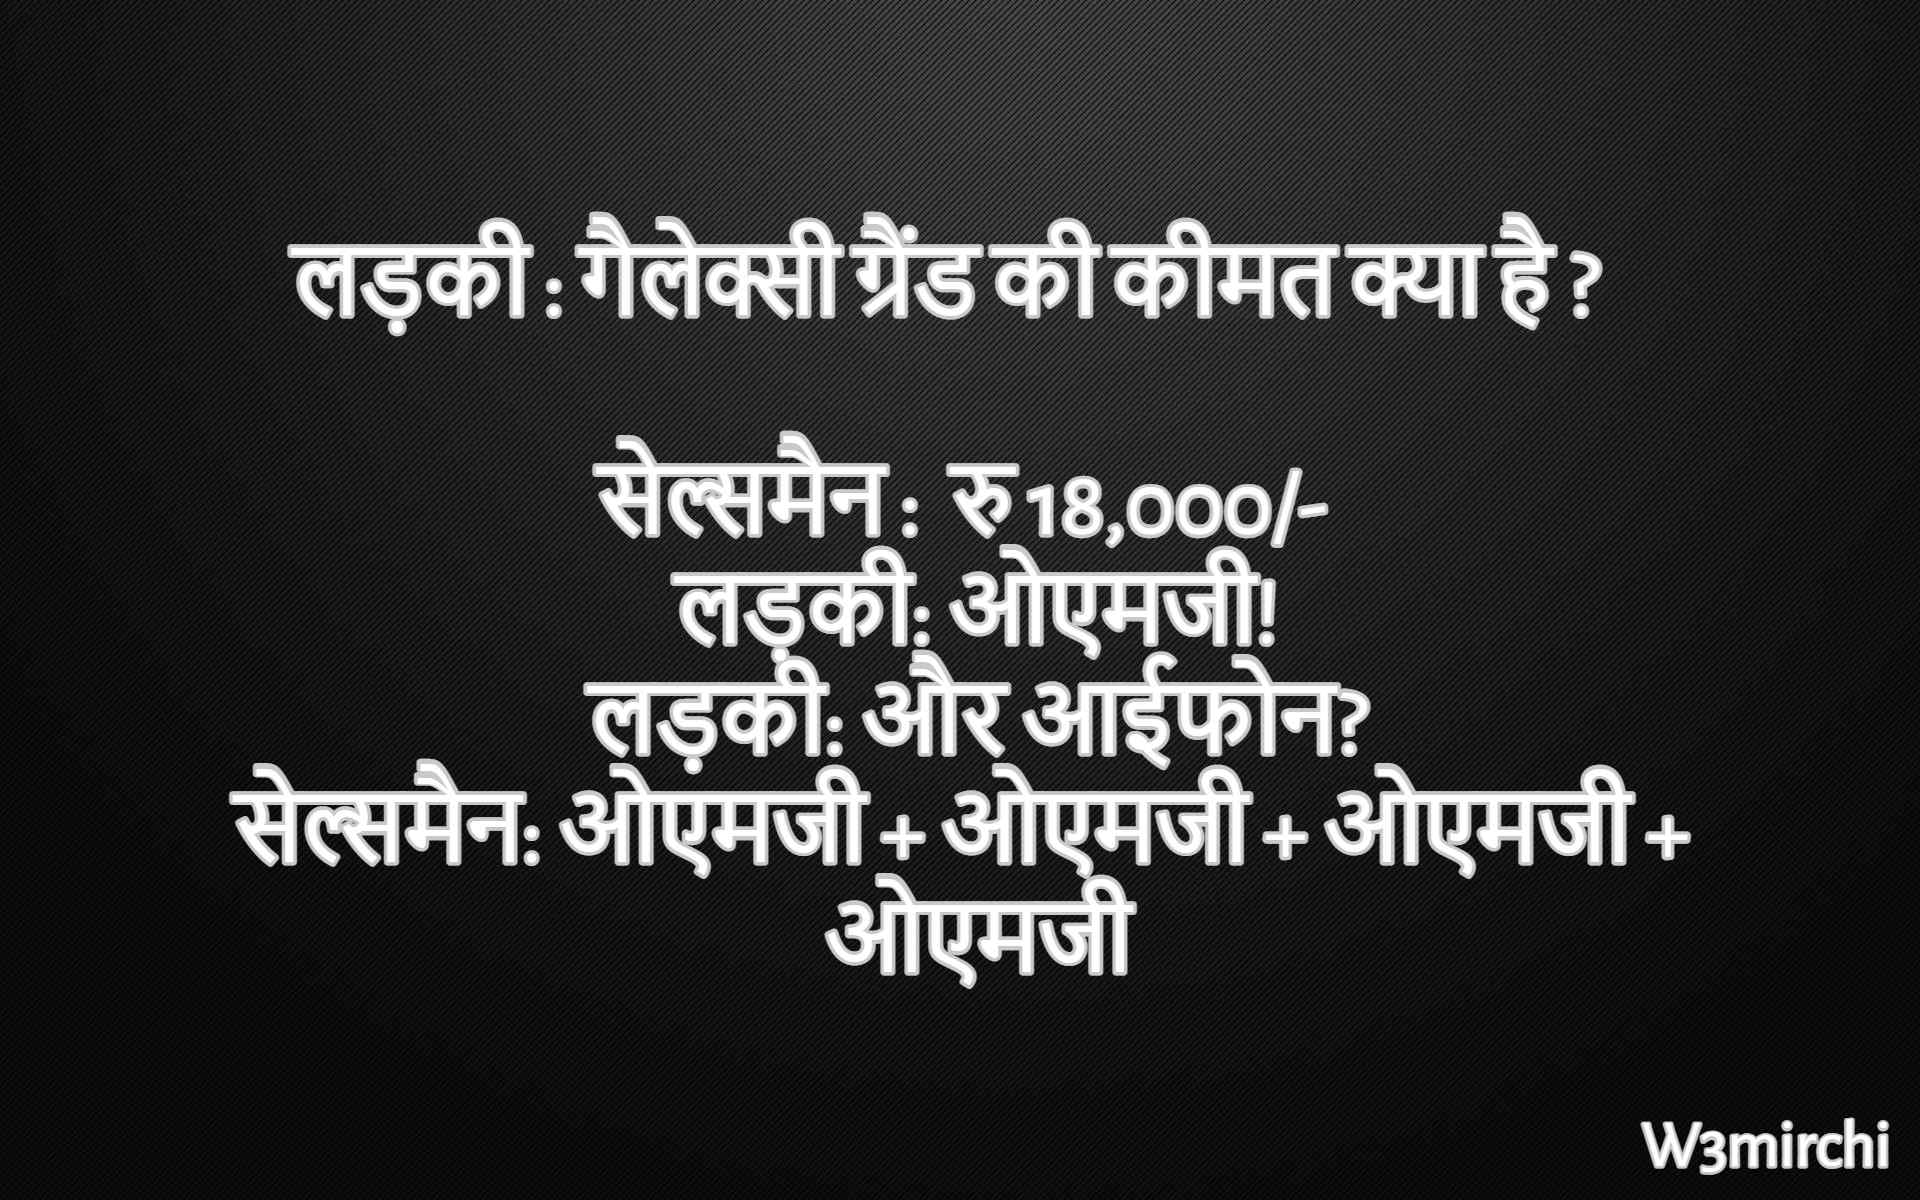 Iphone Jokes in hindi